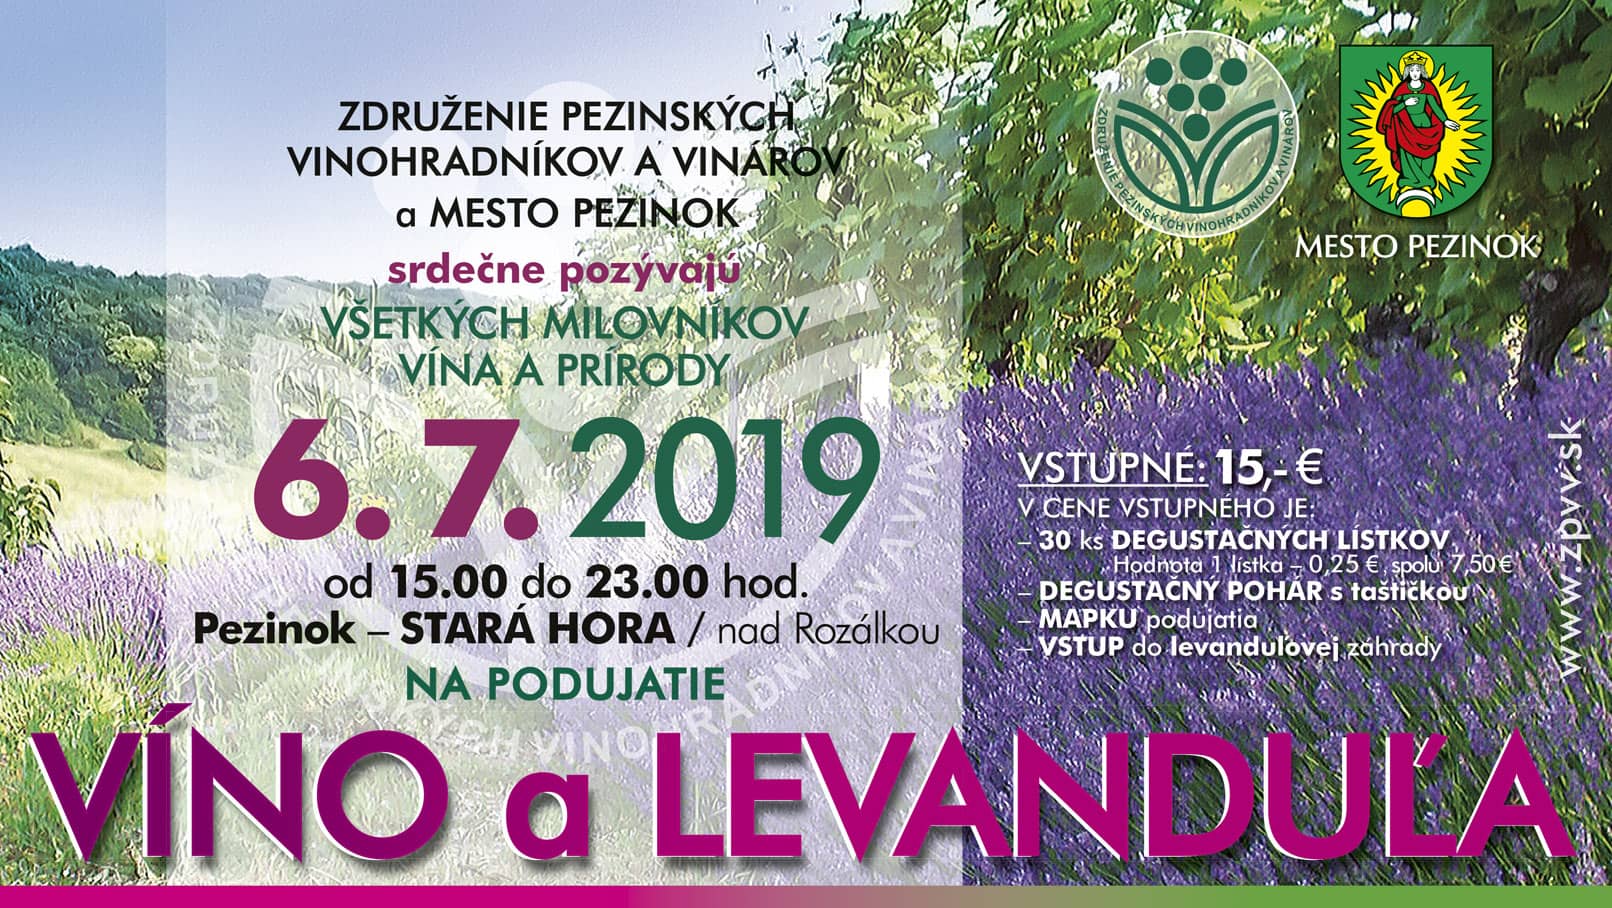 Vno a levandua Pezinok 2019 - 8. ronk